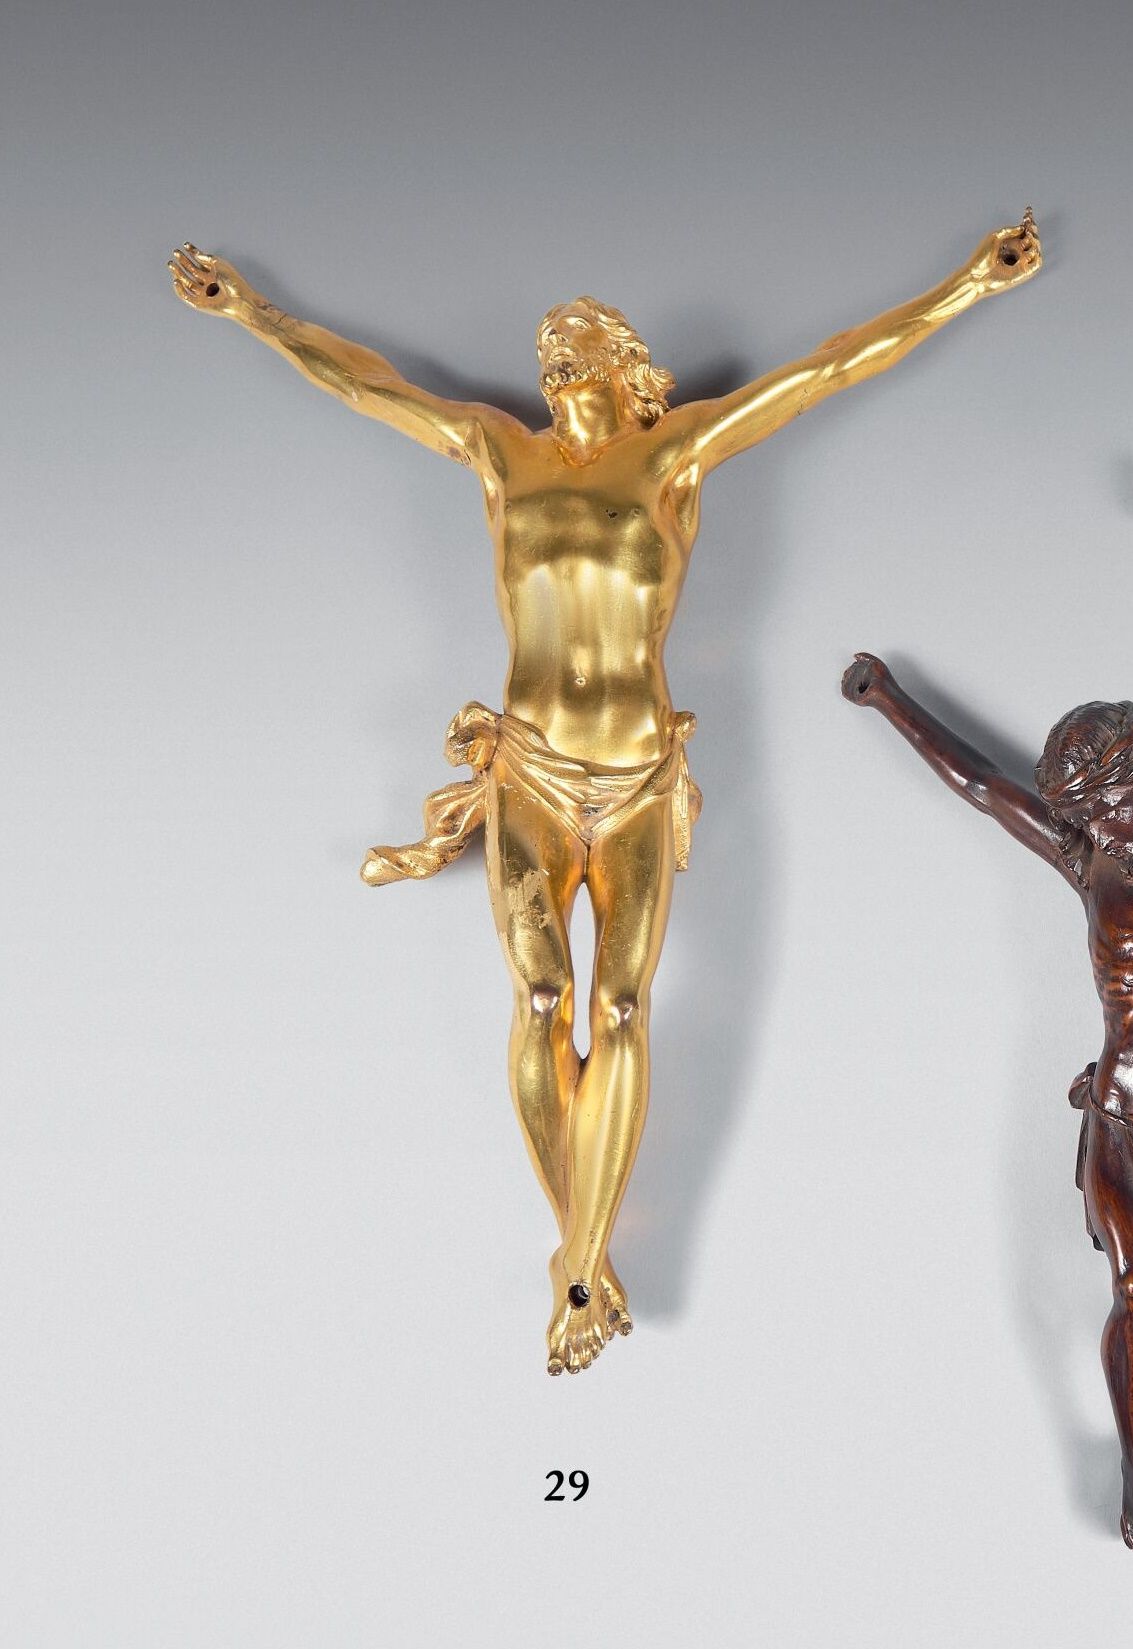 Null Cristo in bronzo dorato con perizonio cesellato.
Altezza: 25 cm